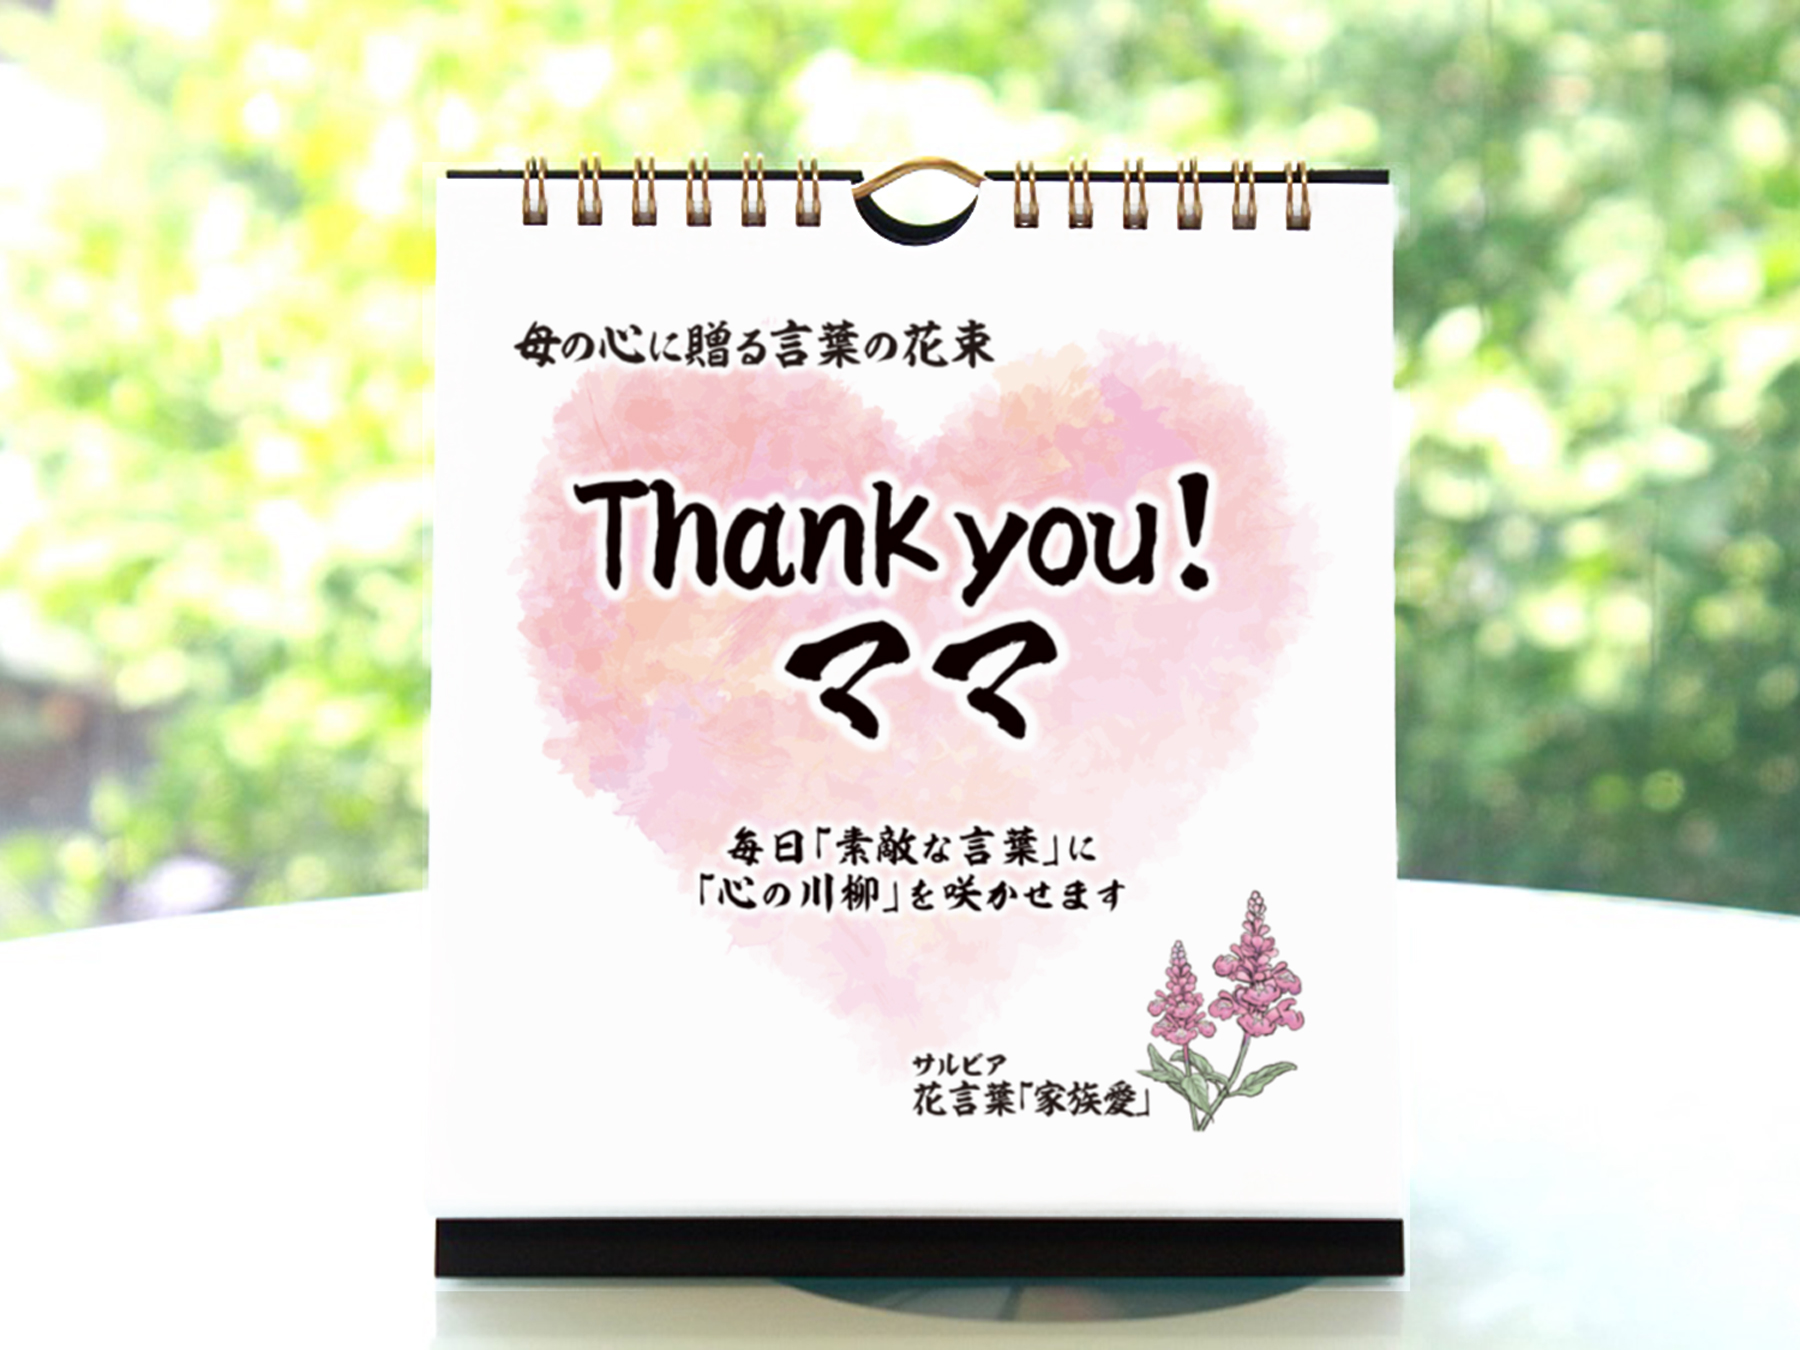 【母の日】日めくりカレンダー「Thank you!ママ」